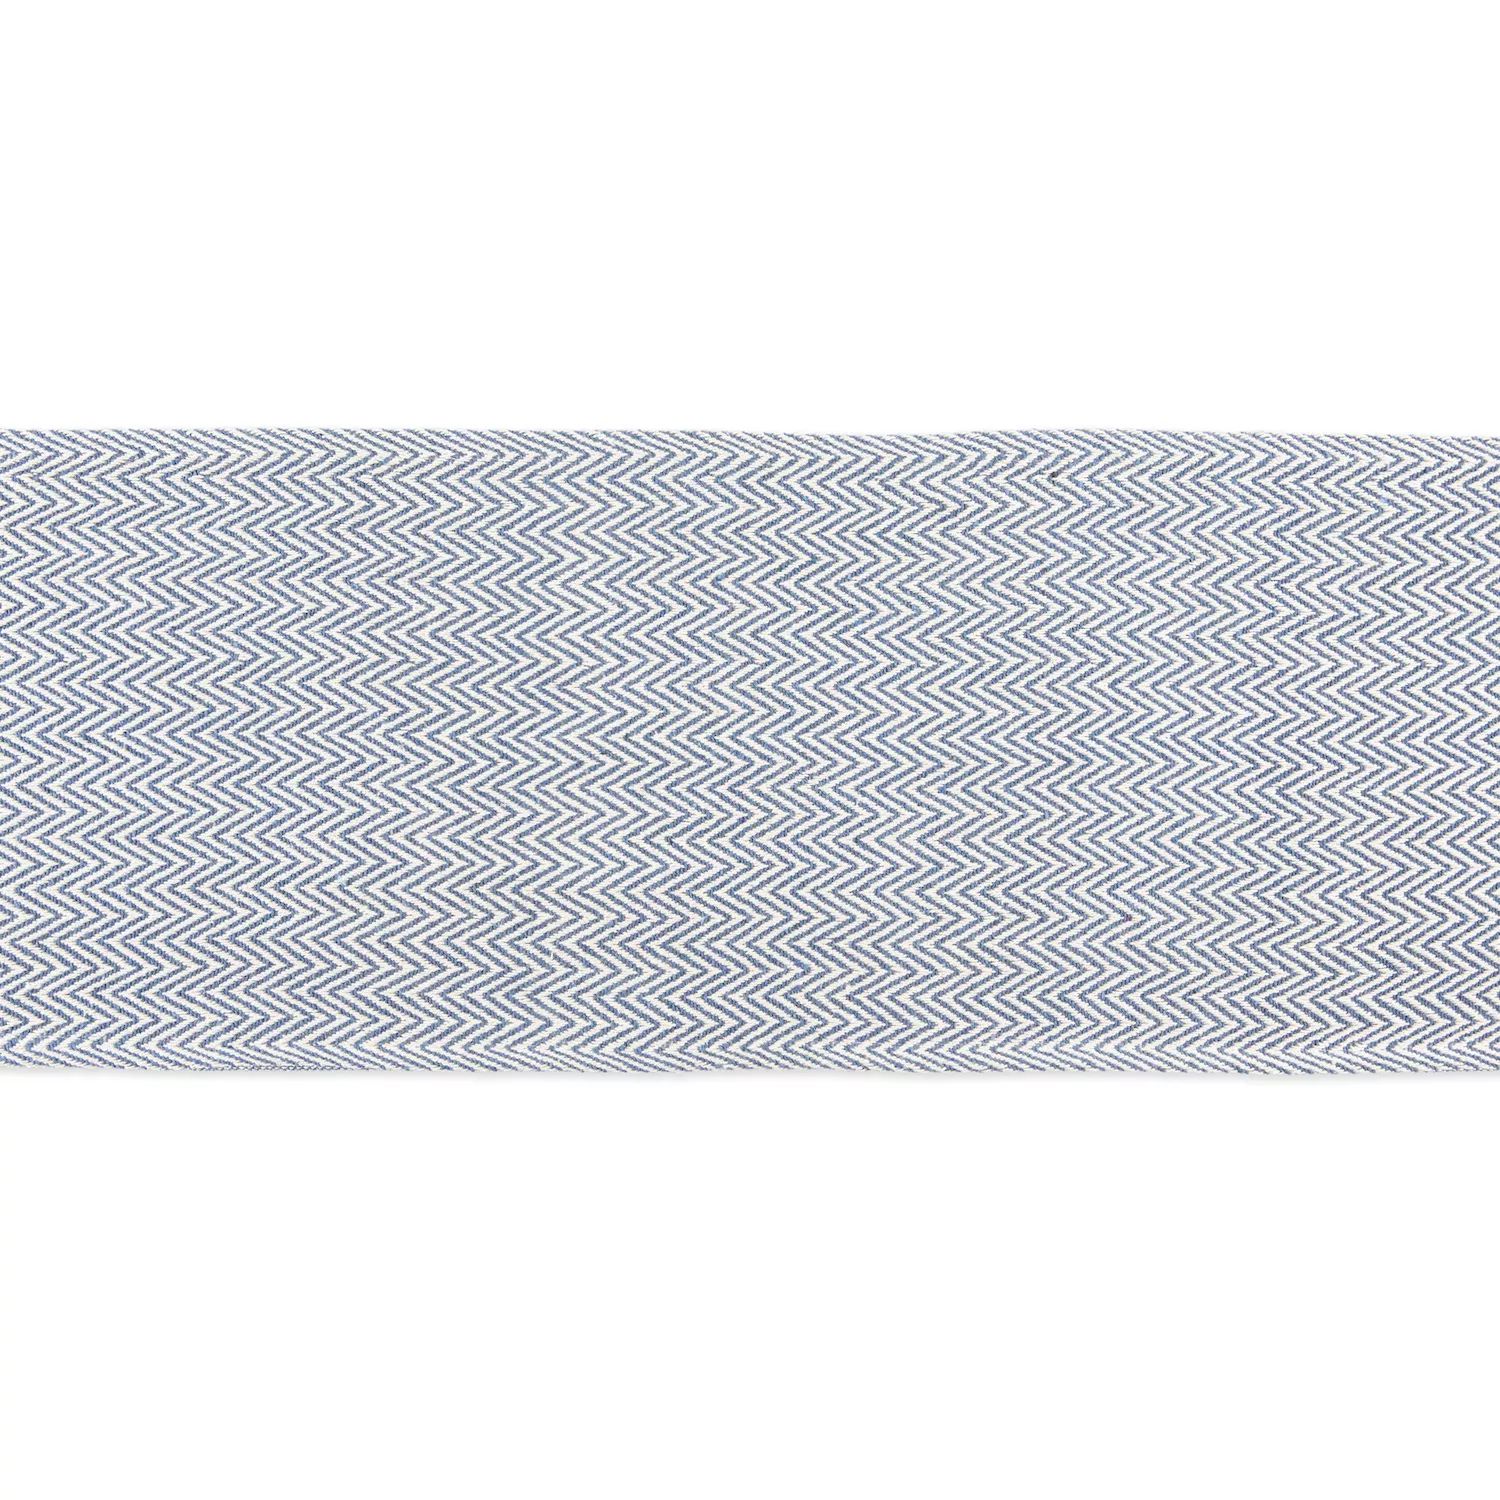 72-дюймовая сине-белая прямоугольная дорожка с шевронным плетением 72 дюймовая прямоугольная скатерть с шевронным плетением цвета морской волны и белого цвета